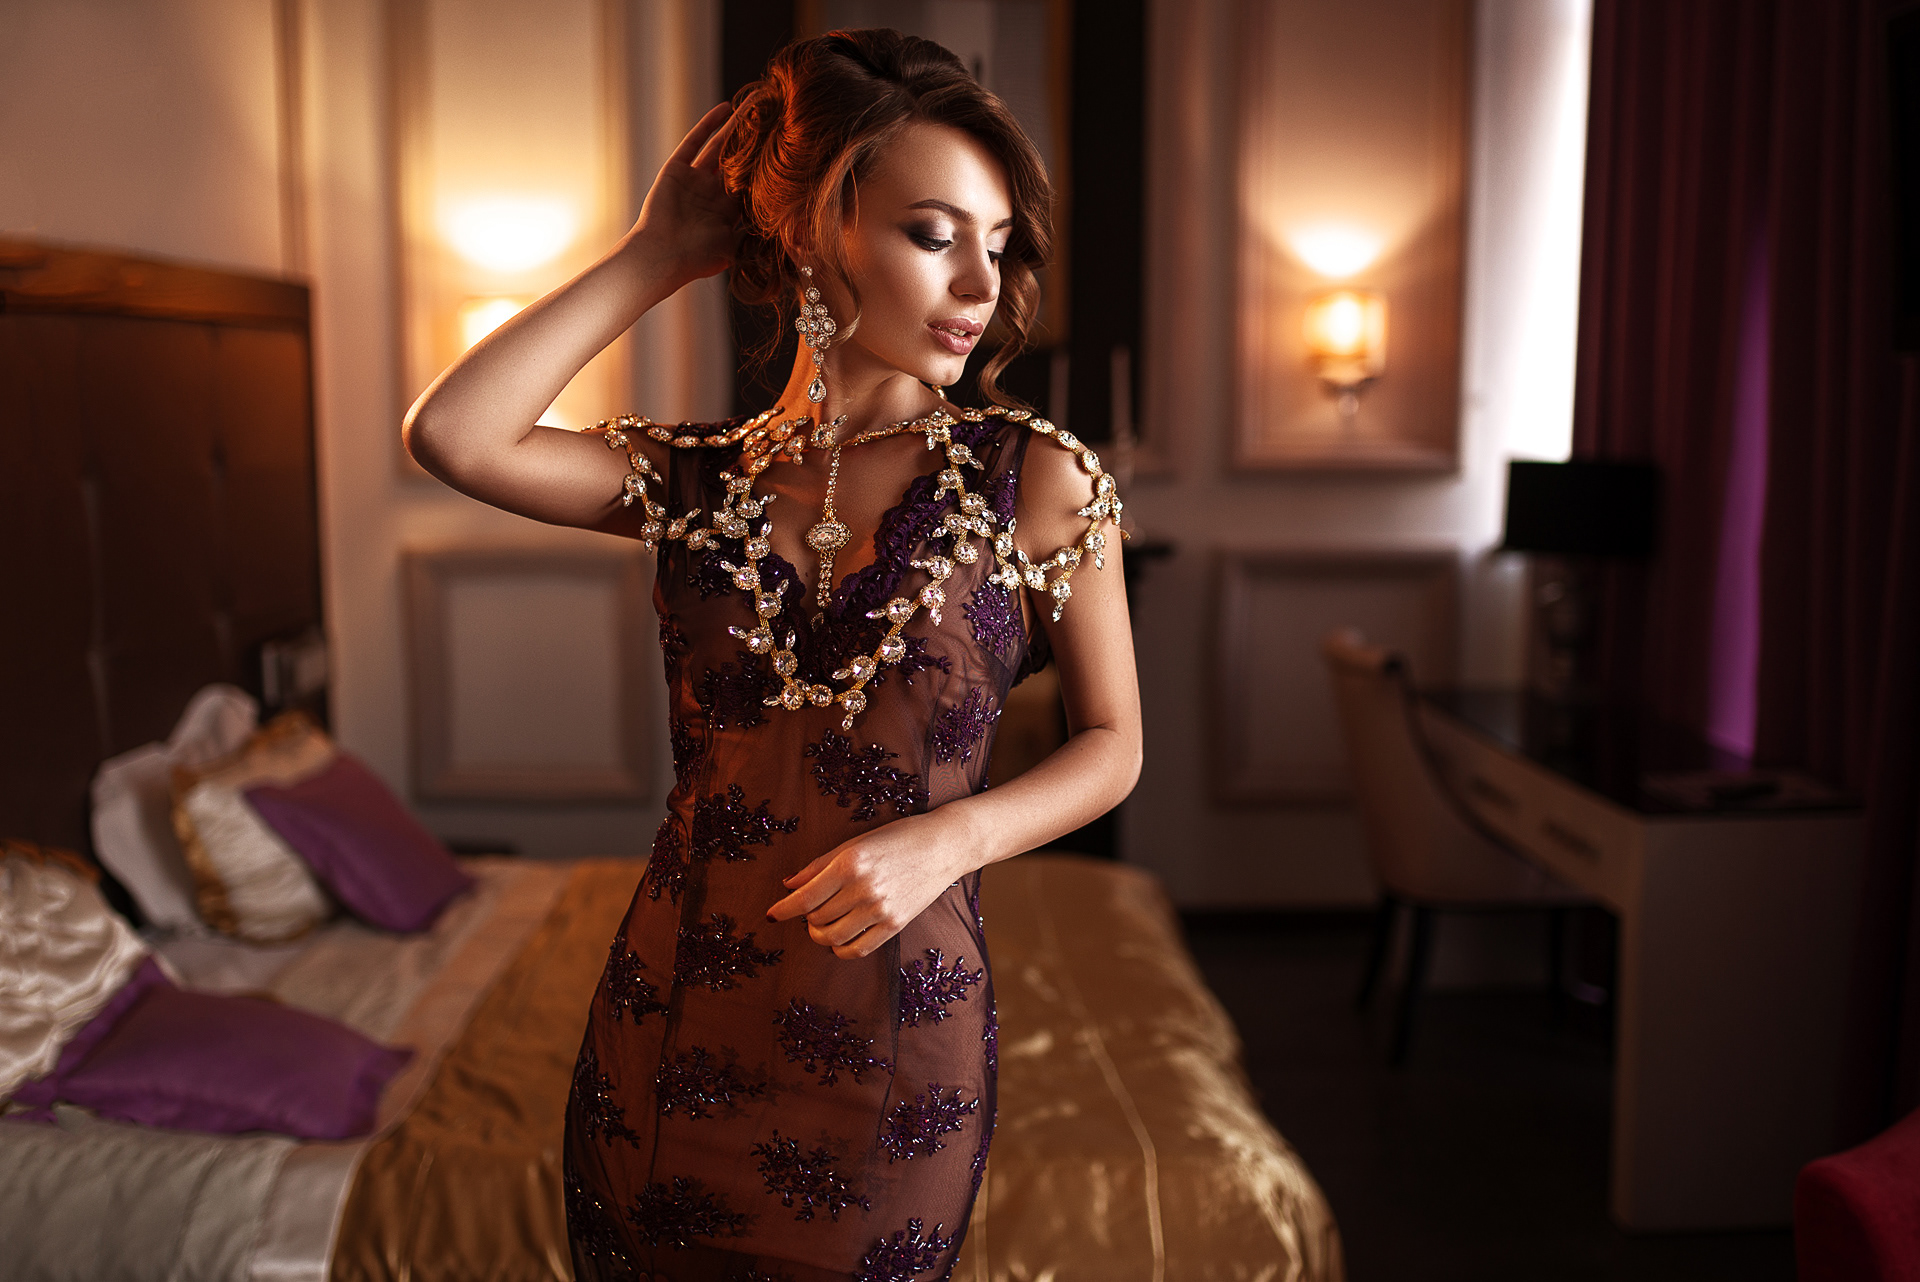 Maks Kuzin Luxury Women Model Dress Jewelry Hotel Bed Purple Dresses Lipstick Earring 1920x1282